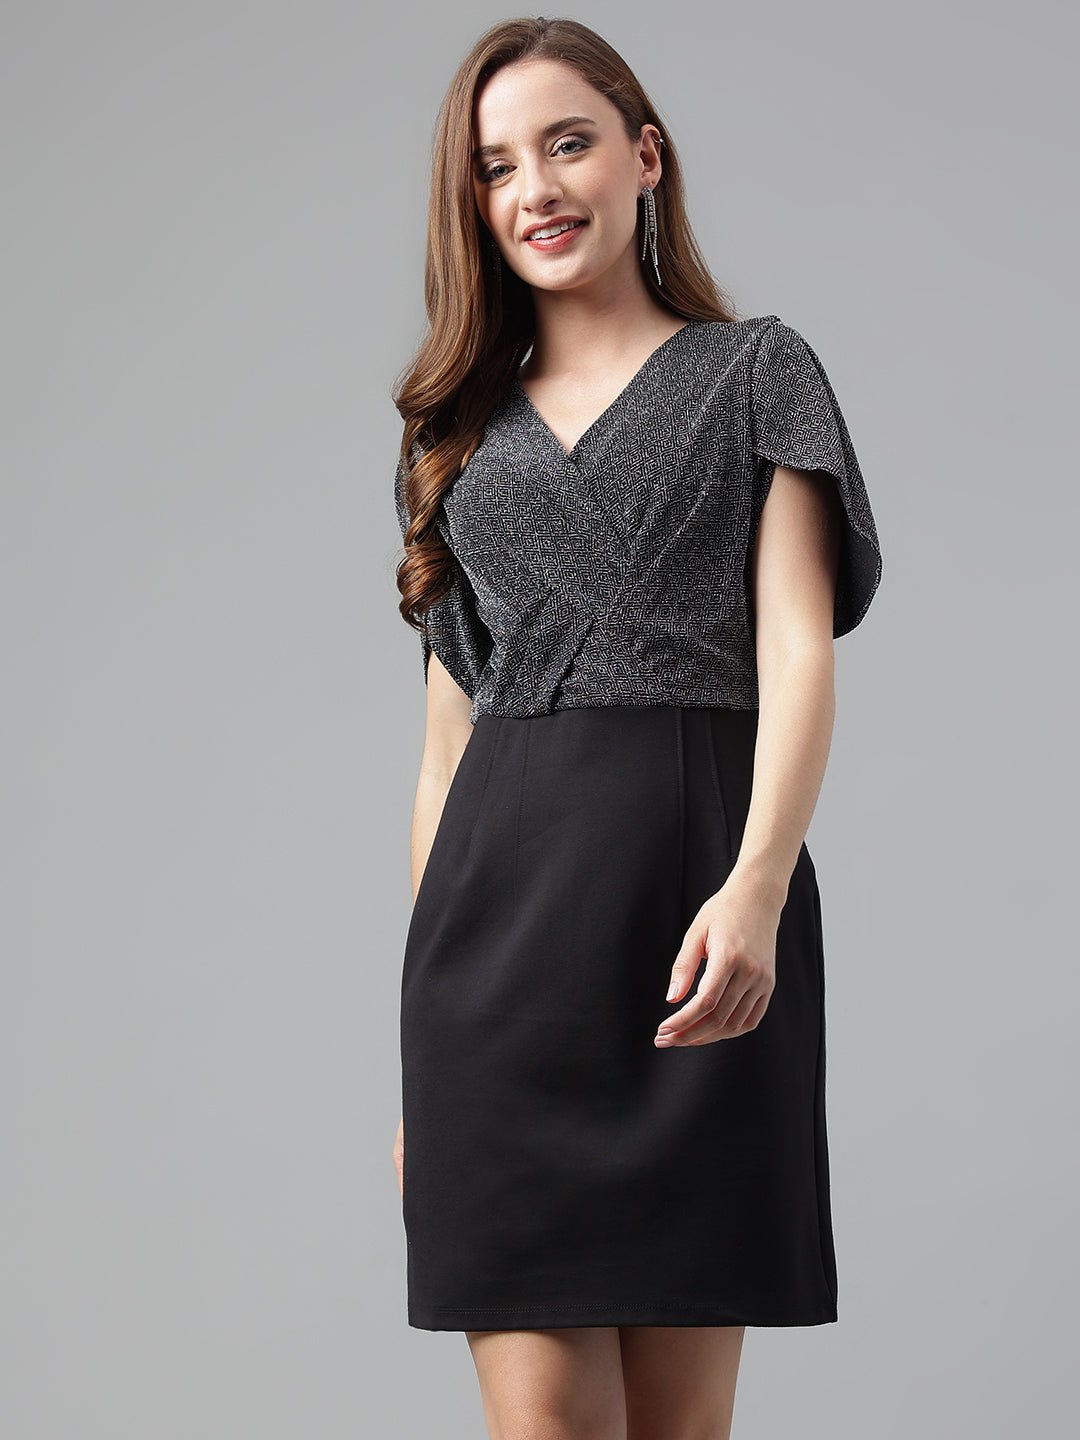 Black Half Sleeve Solid Dress